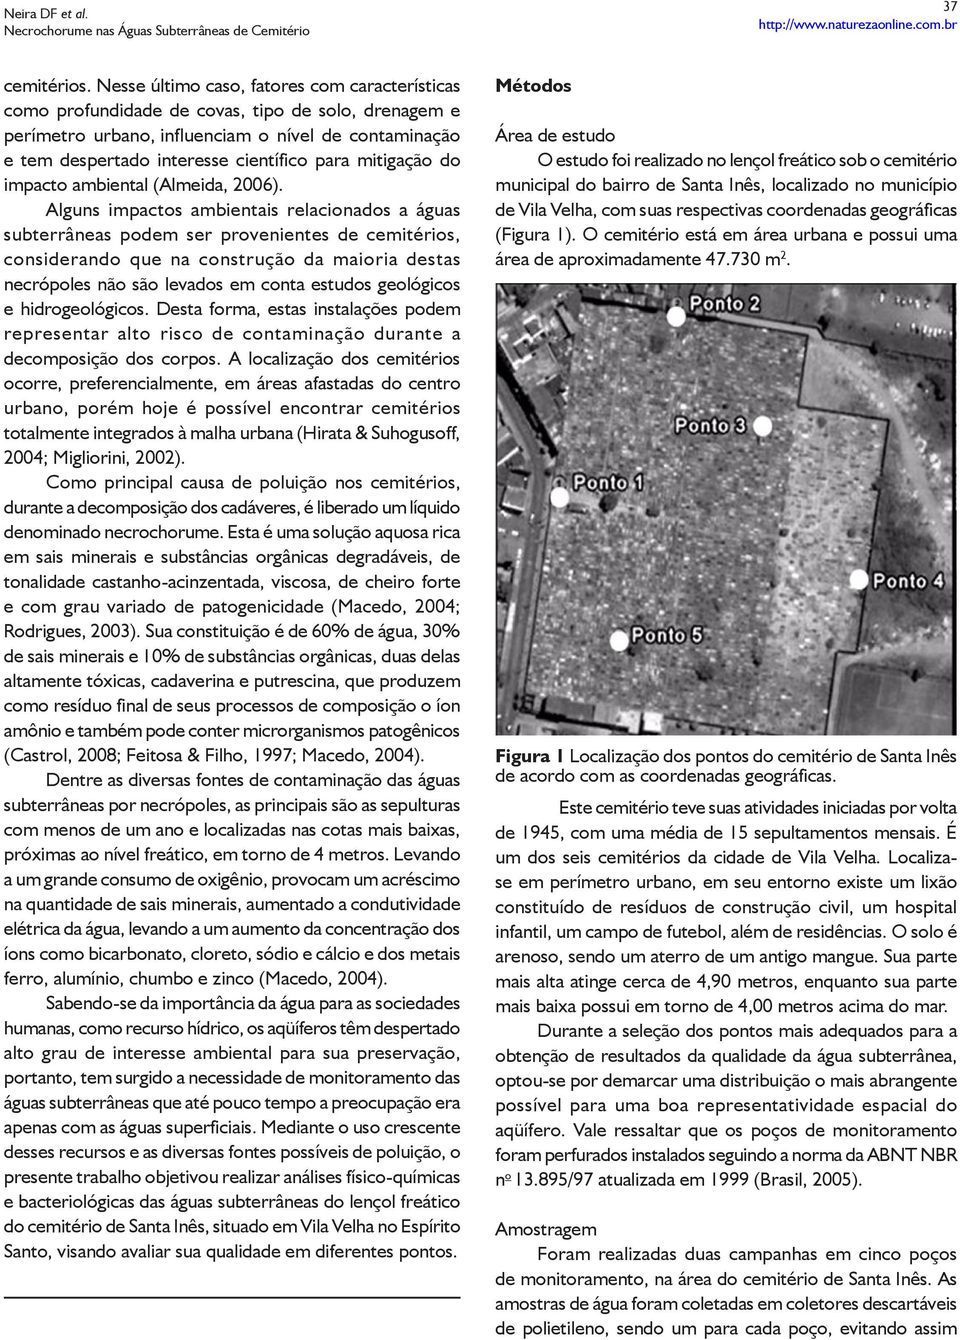 mitigação do impacto ambiental (Almeida, 2006).